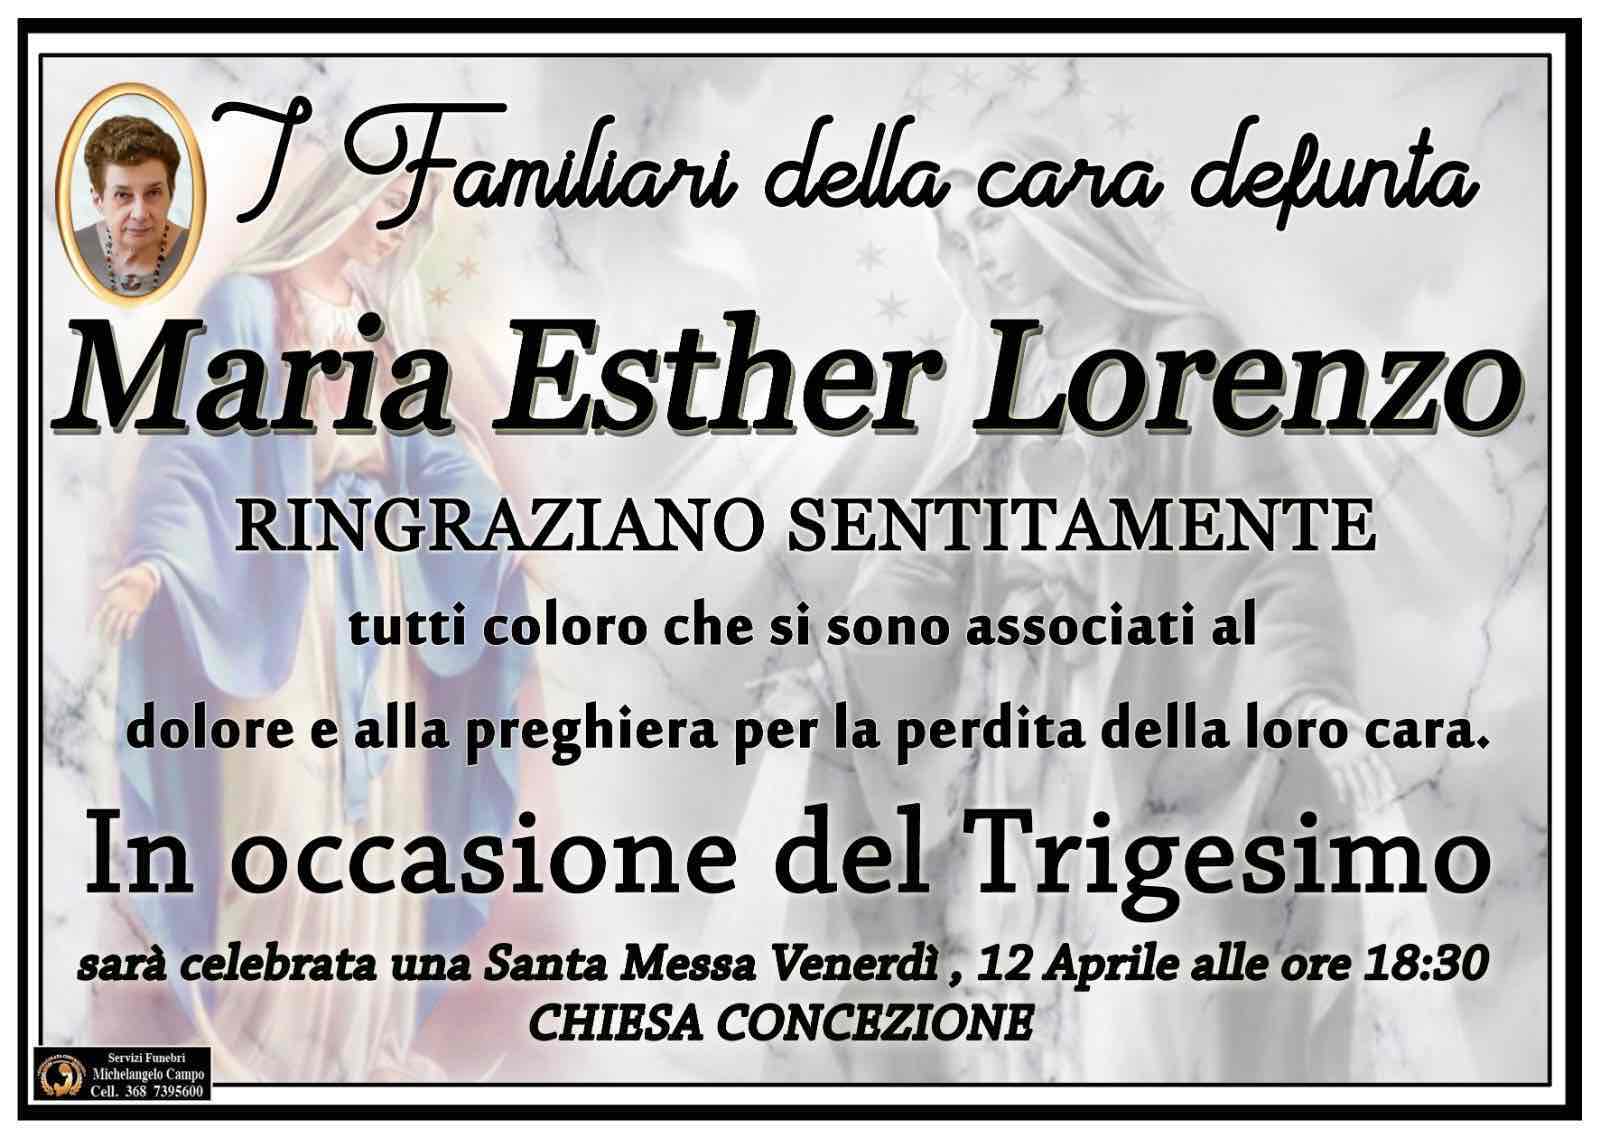 Maria Esther lorenzo